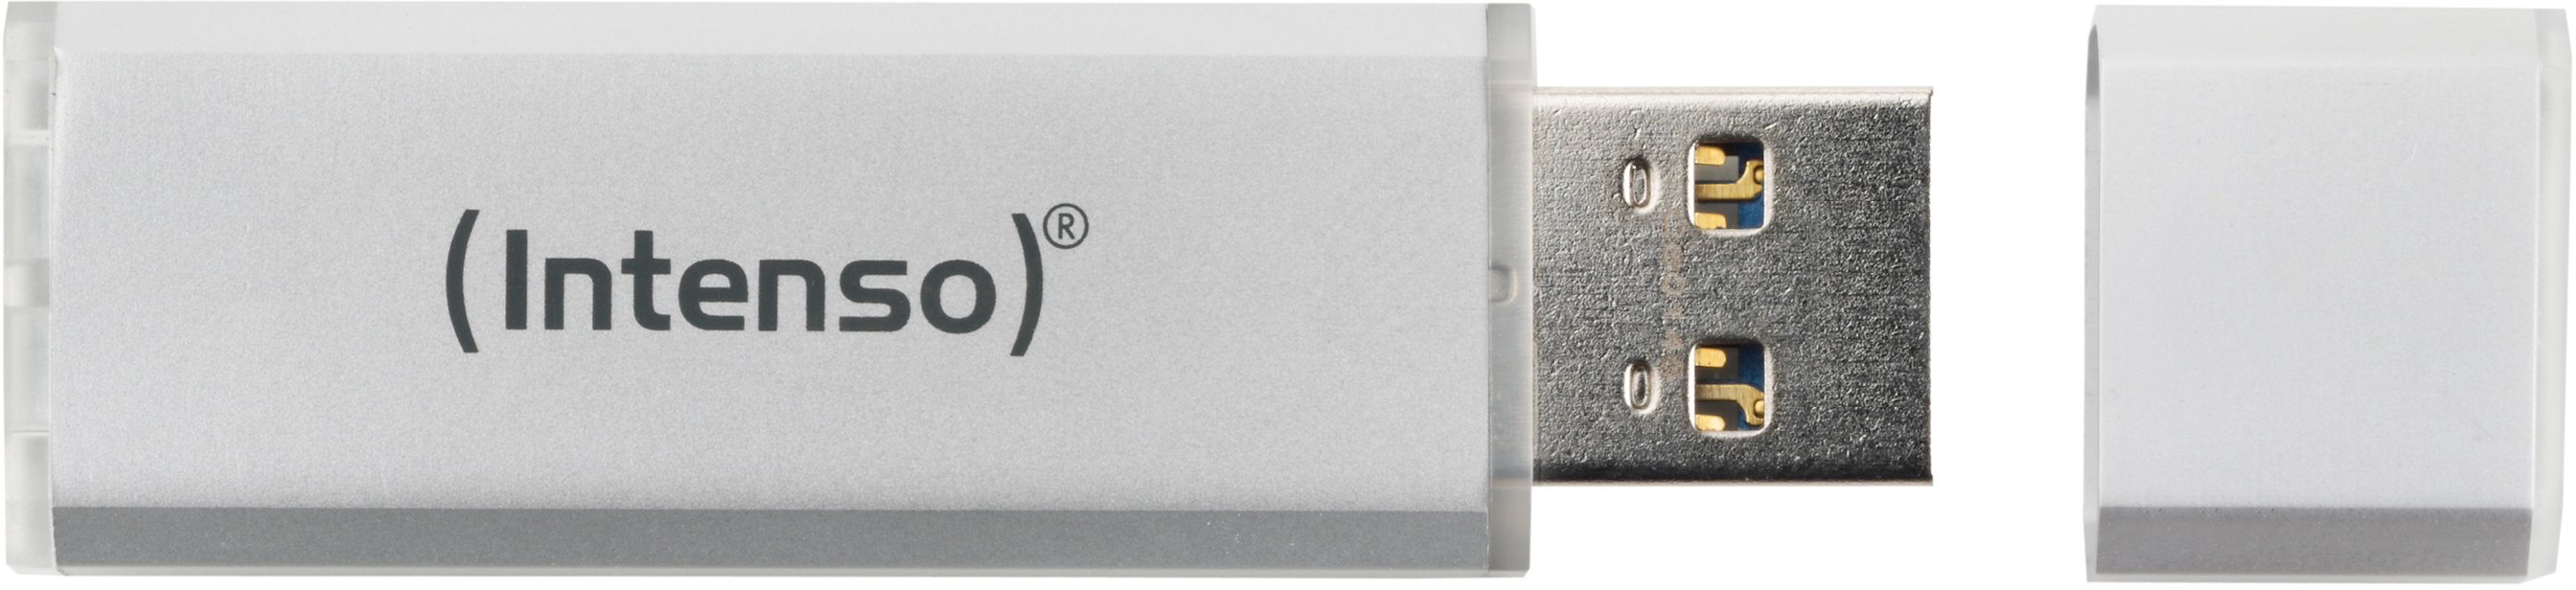 INTENSO USB-Stick Alu Line 64GB 3521492 USB 2.0 silver USB 2.0 silver